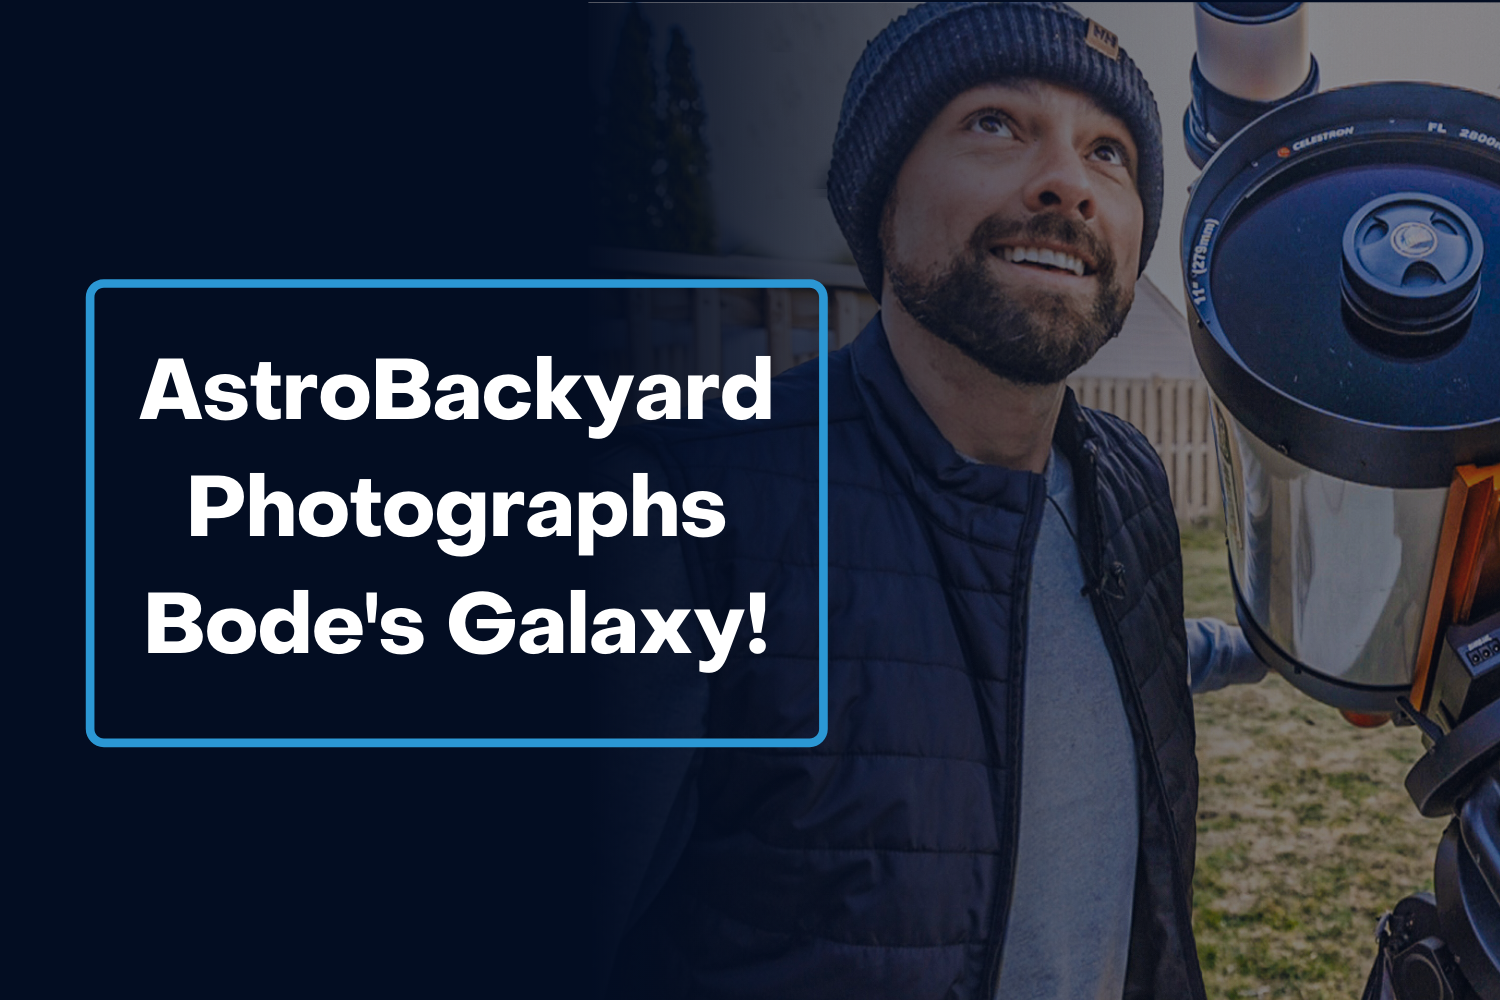 AstroBackyard Photographs Bode's Galaxy!